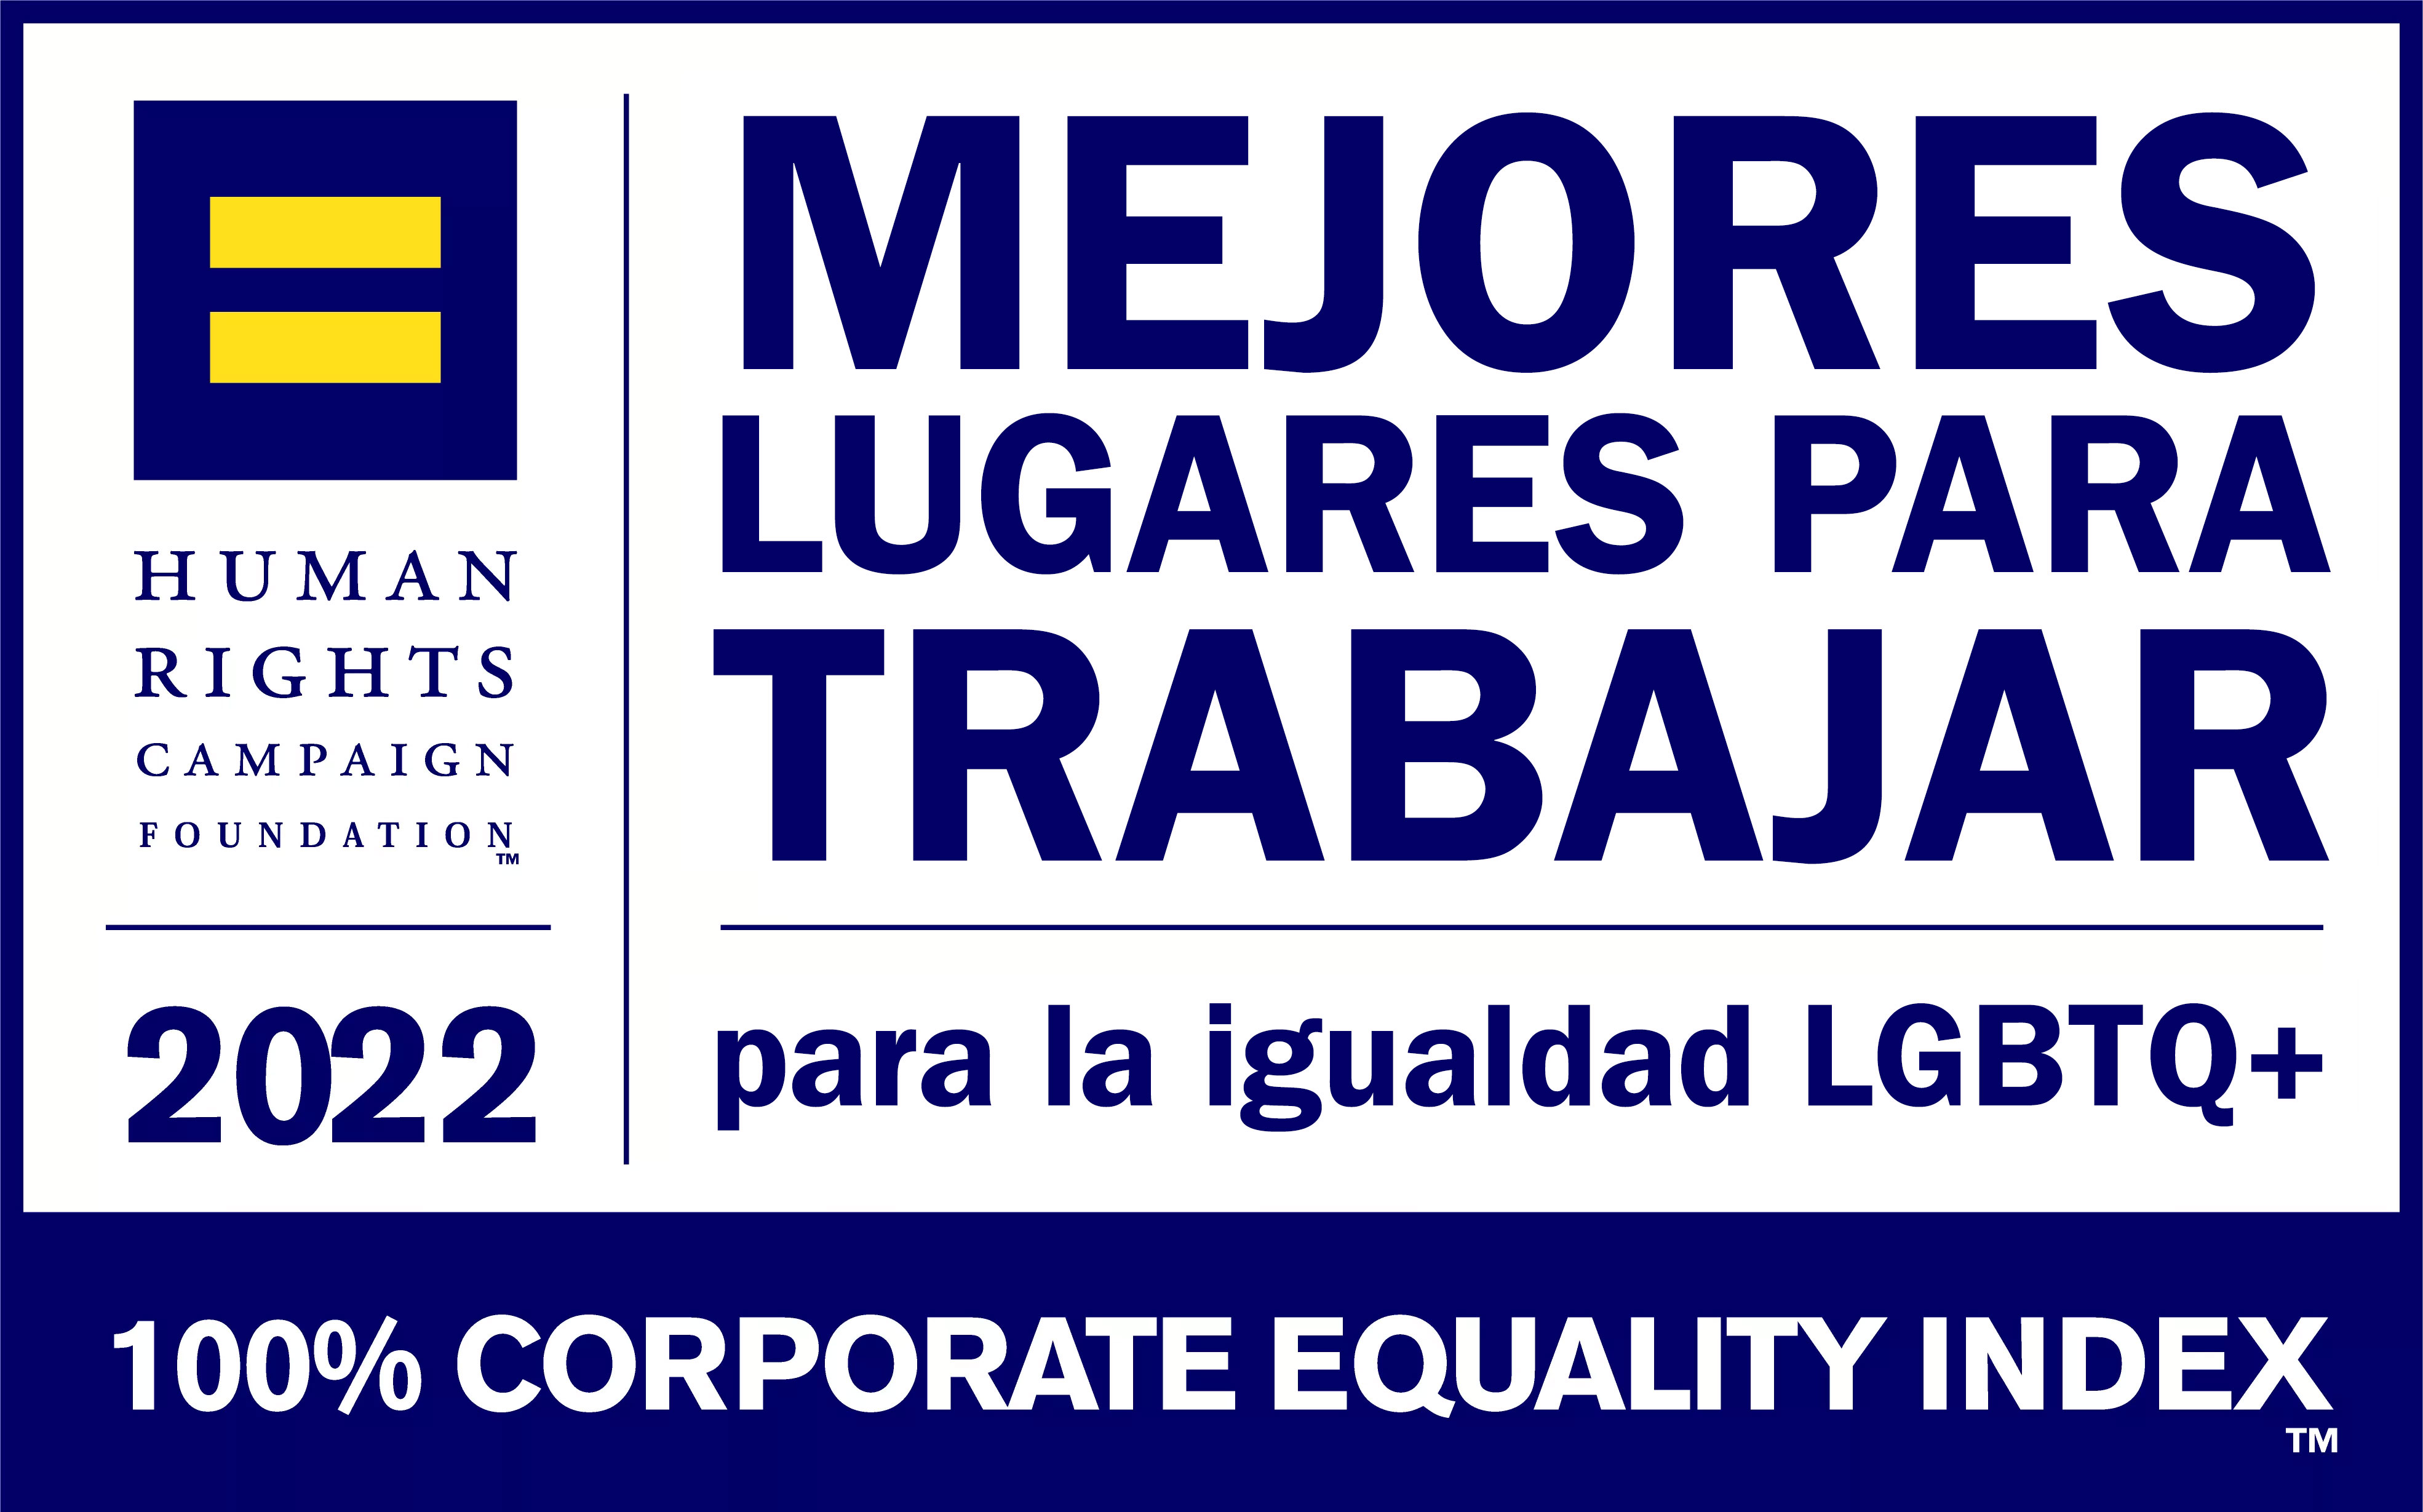 Human Rights Campaign Foundation 2022 mejores lugares para trabajar para la igualdad LGBTQ+. 100% corporate equality index